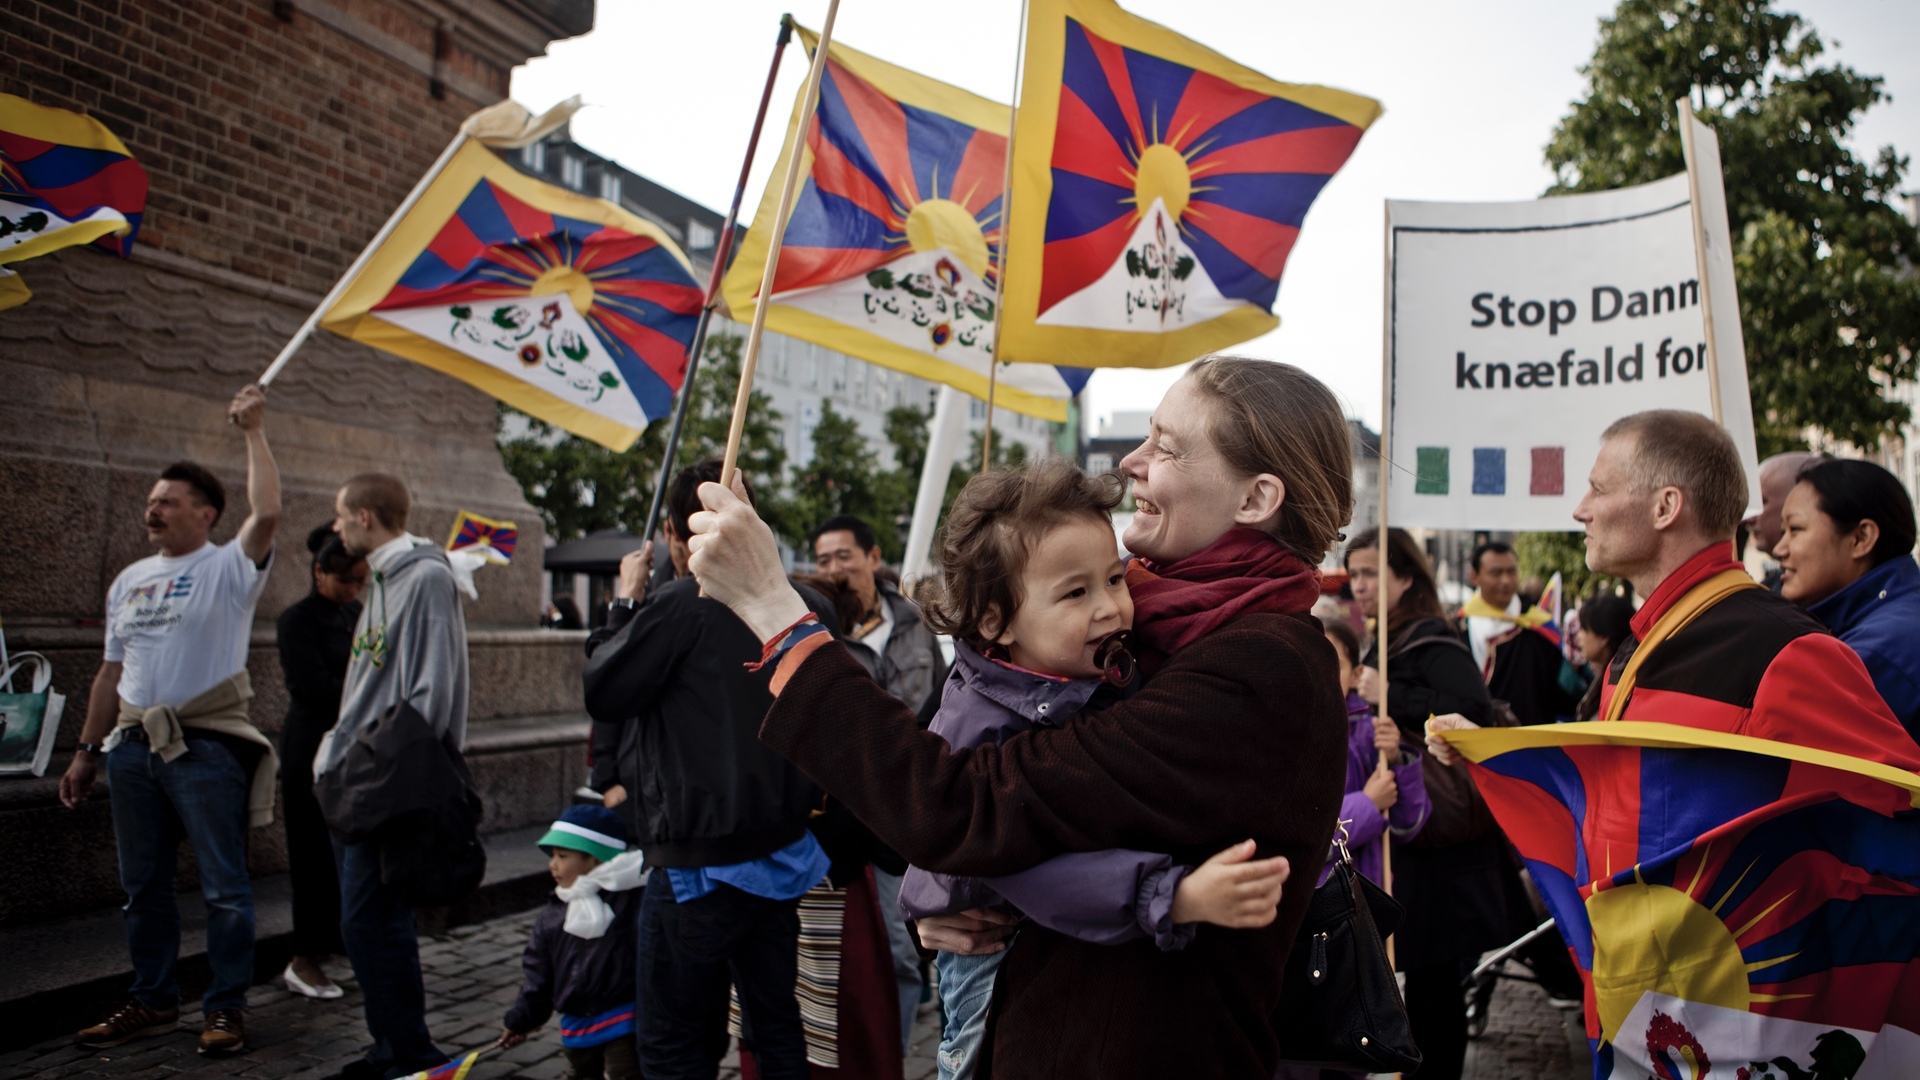 Rosa Lund om Tibetsagen: Det må være svært for borgerne at bevare tilliden til retssystemet, når politichefers mails slettes i en så kontroversiel sag